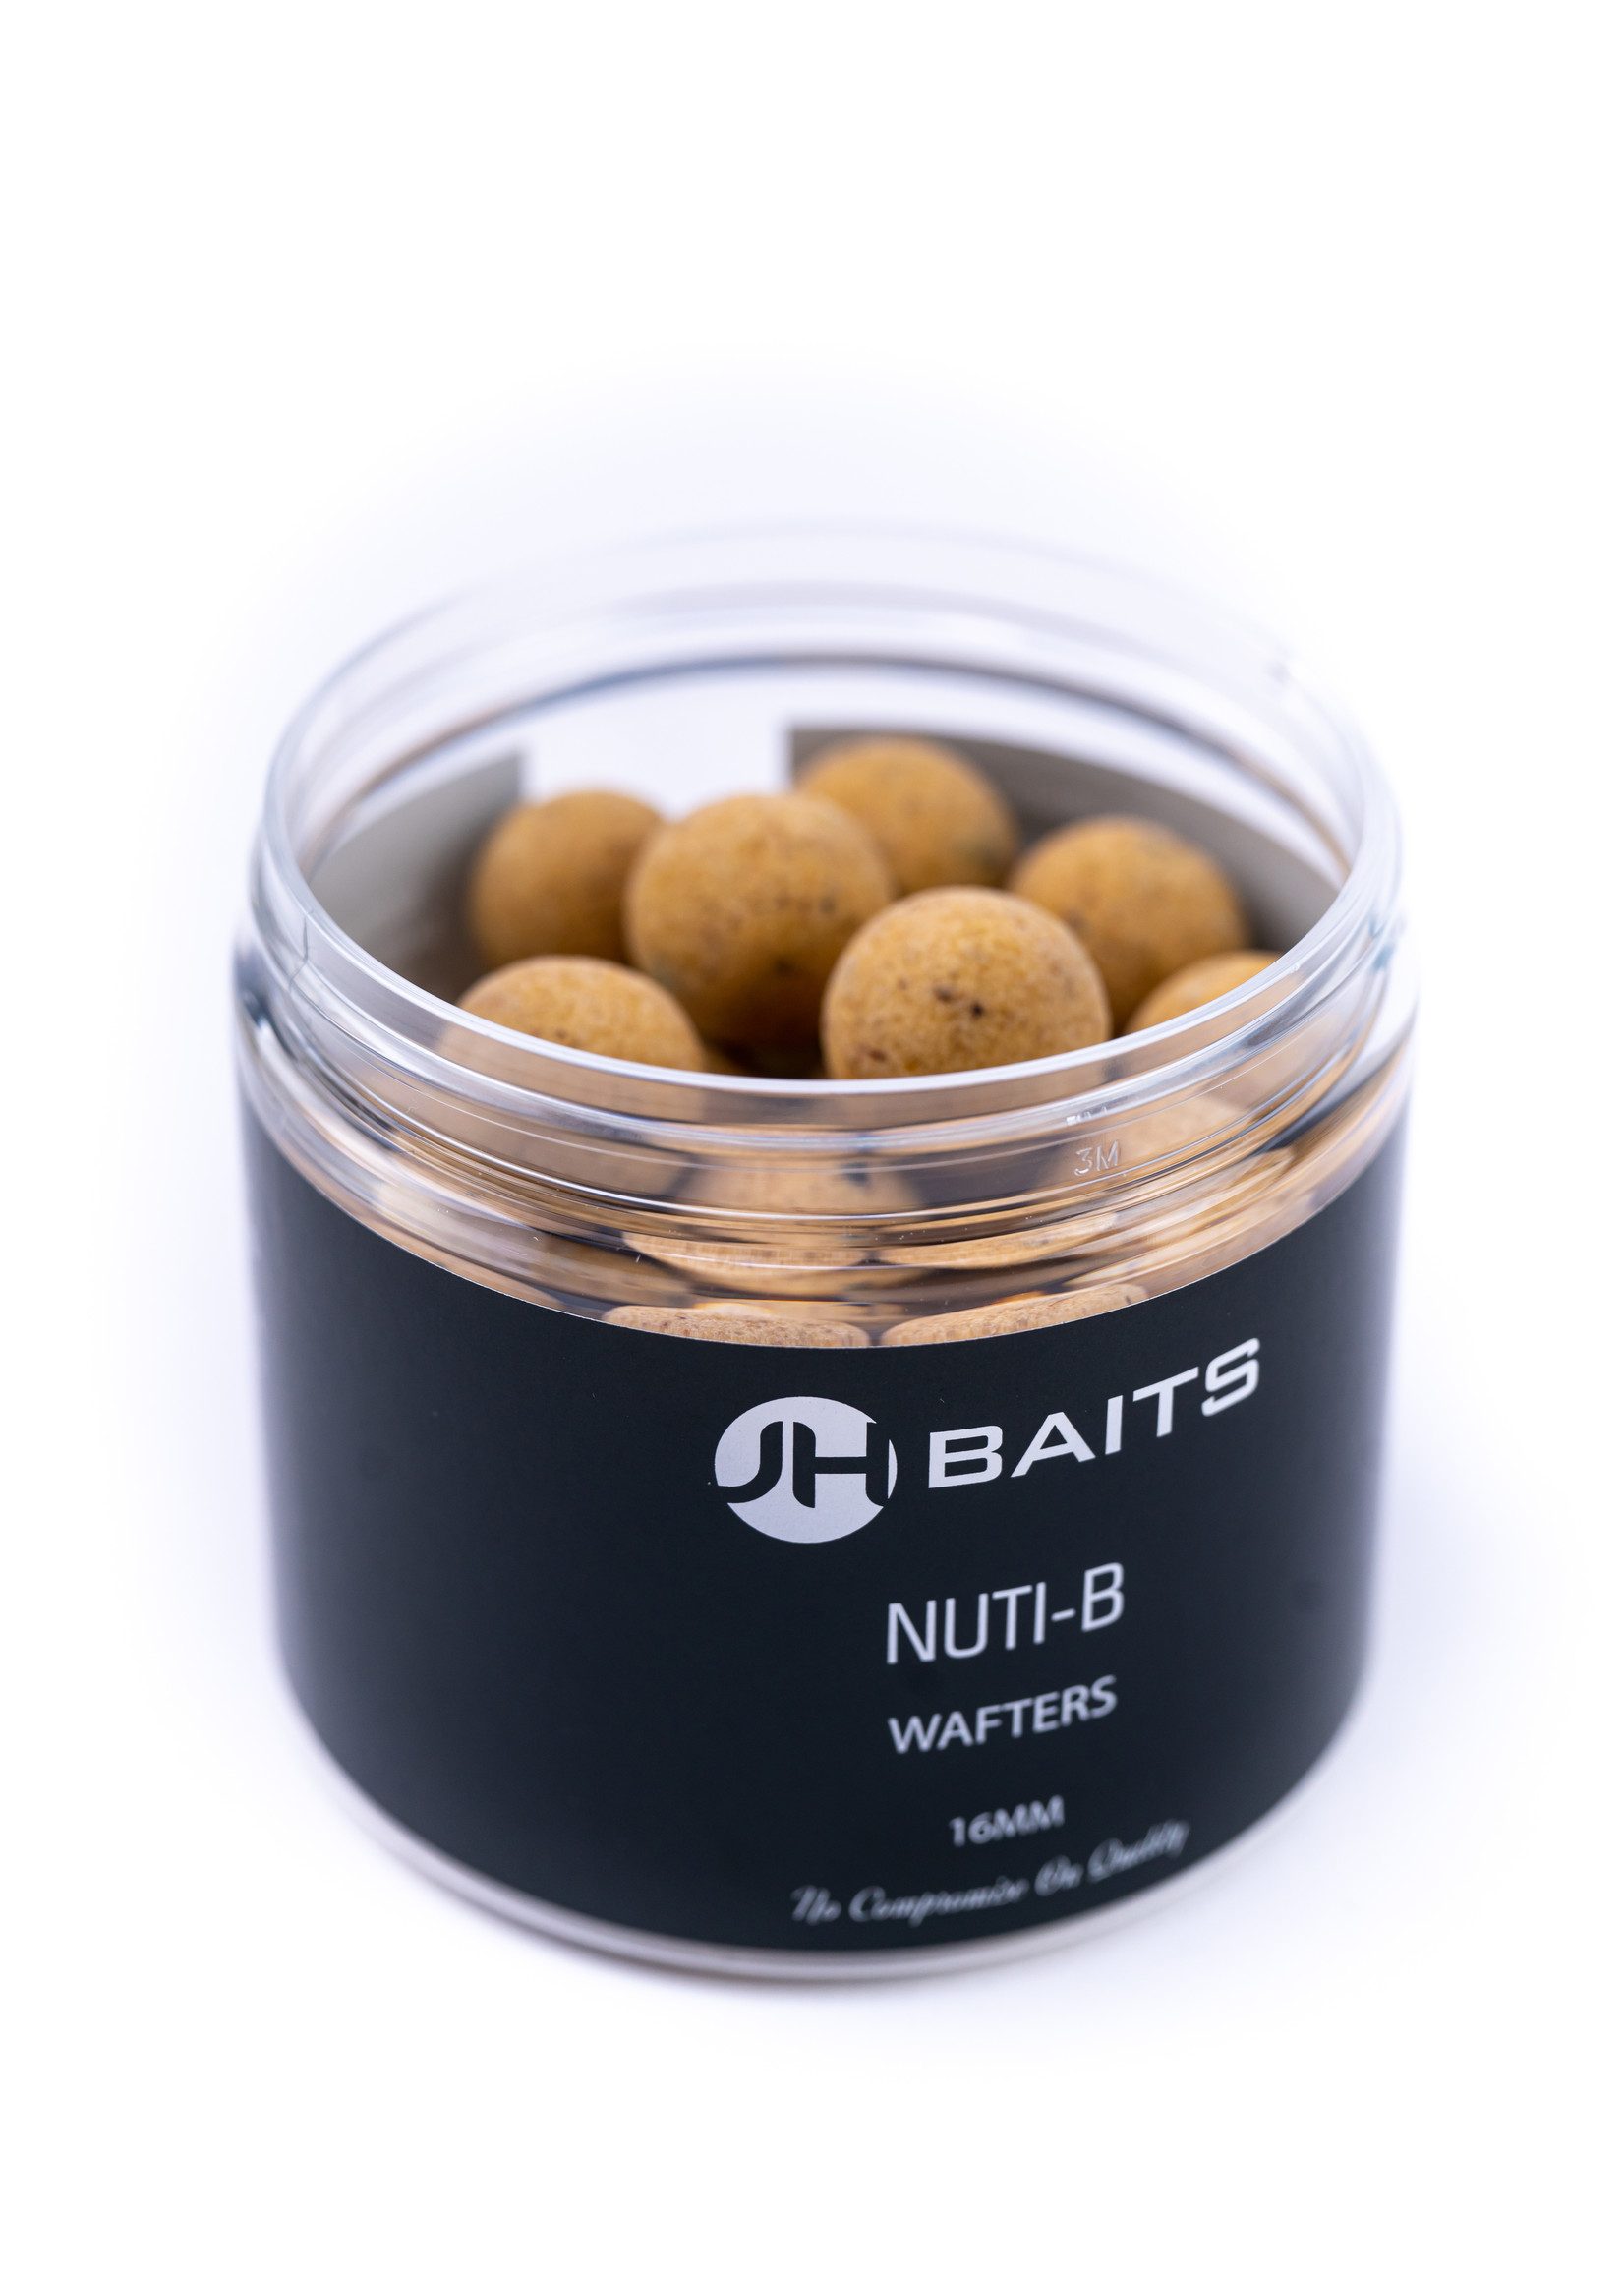 JH Baits Wafters Nuti-B